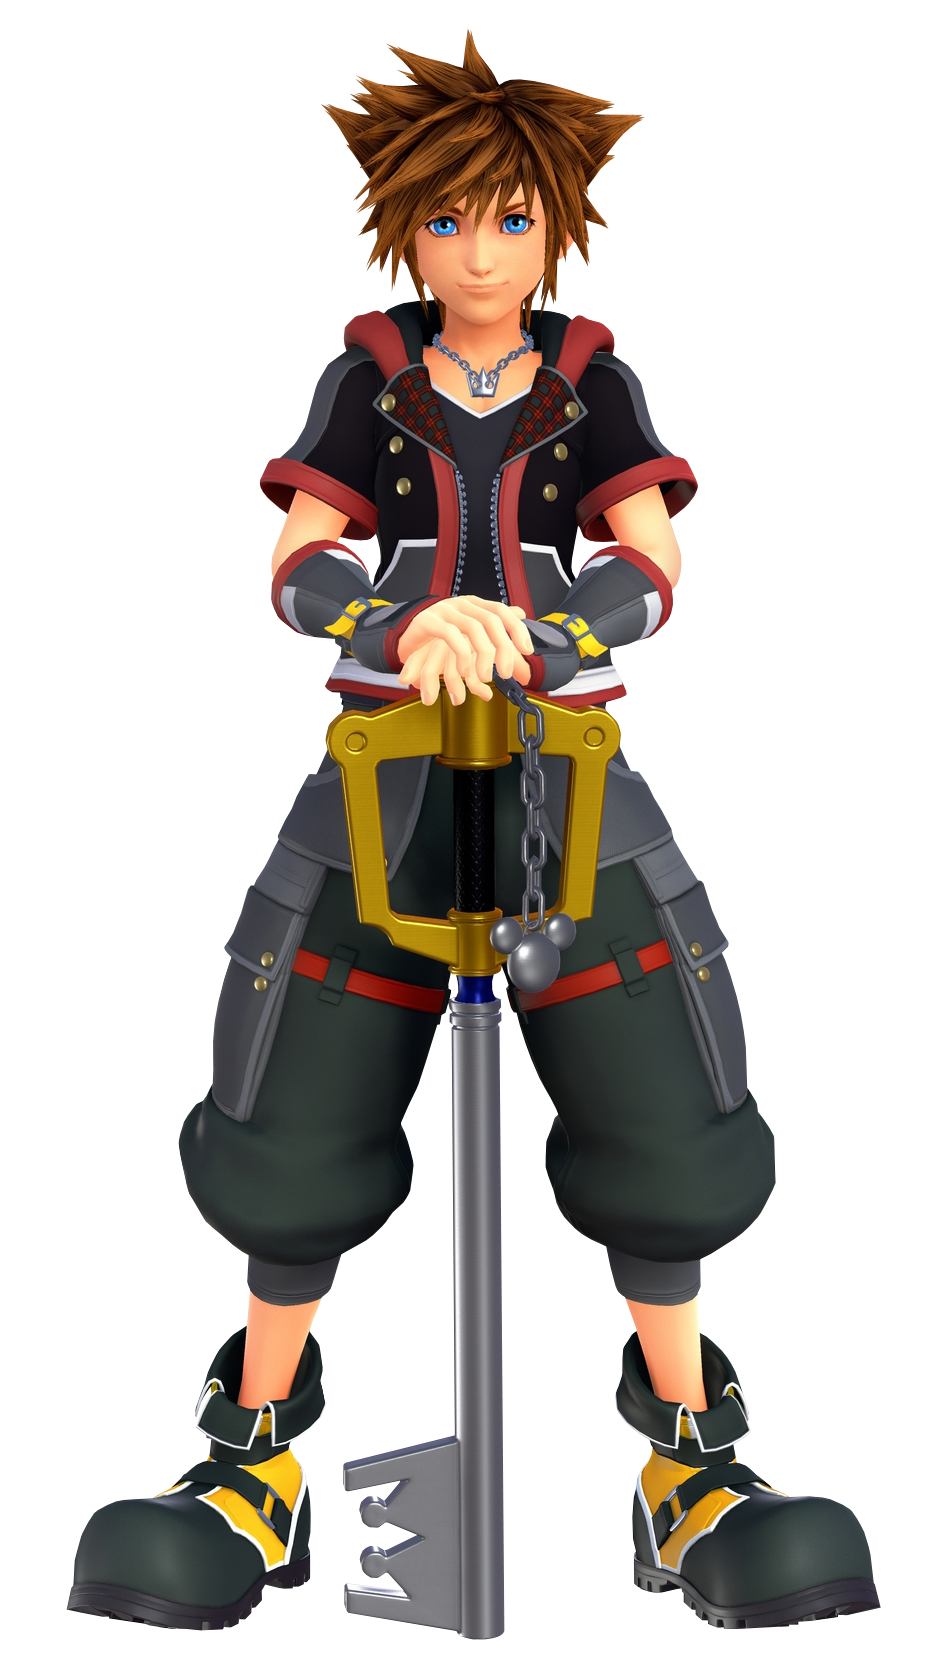 Sora - Kingdom Hearts Wiki, the encyclopedia